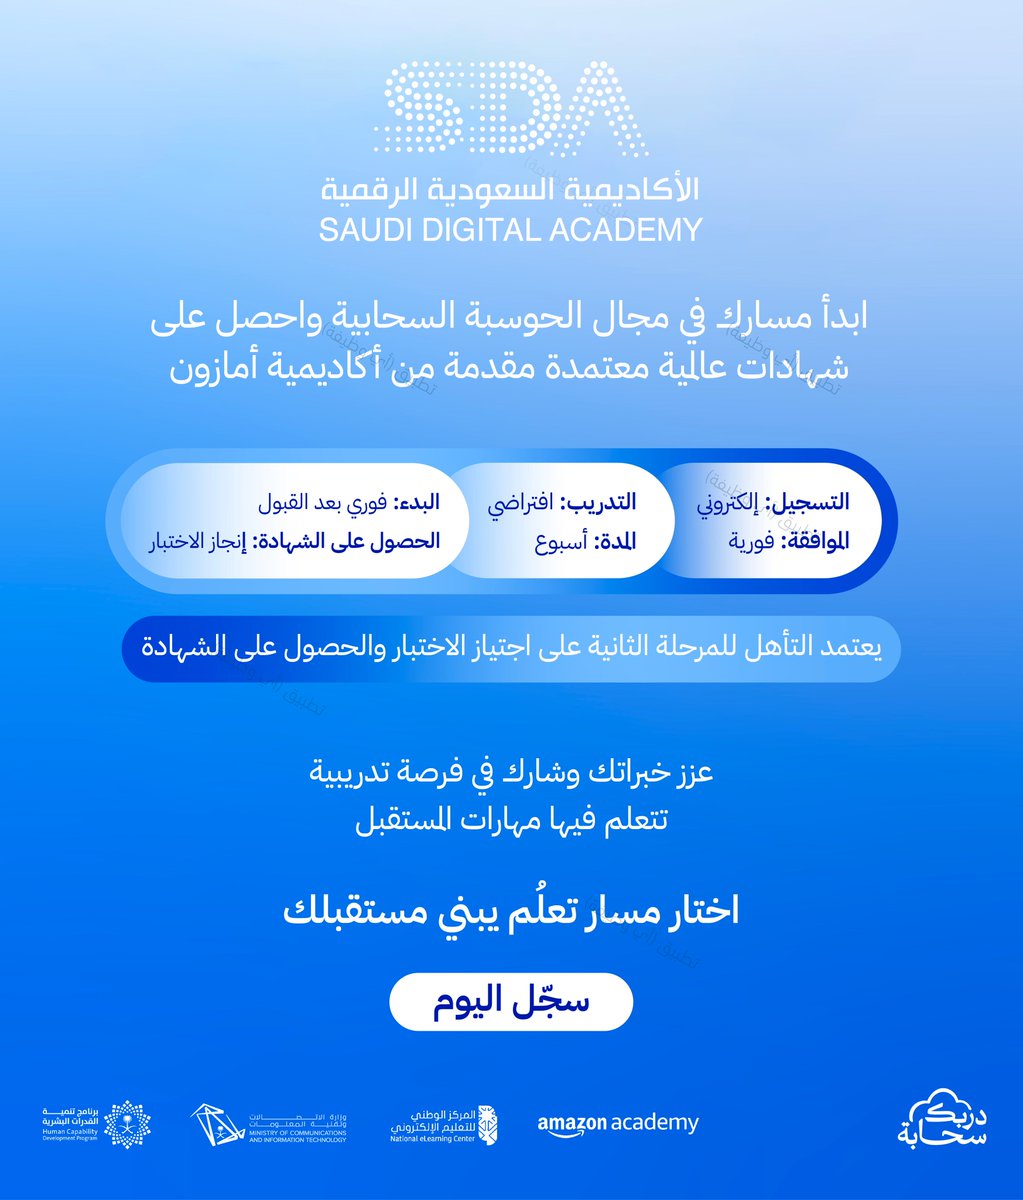 (🔴) عاجل | برنامج مجاني لكافة فئات المجتمع (#عن_بُعد) لمدة (أسبوع) مع شهادة انجاز الاختبار:

(الطلاب، الخريجين، الباحثين عن العمل، رواد الأعمال، الموظفین)

الأكاديمية السعودية الرقمية تعلن برنامج بمجال الحوسبة السحابية بالتعاون مع أكاديمية أمازون

تفاصيل: ewdifh.com/jobs/77522